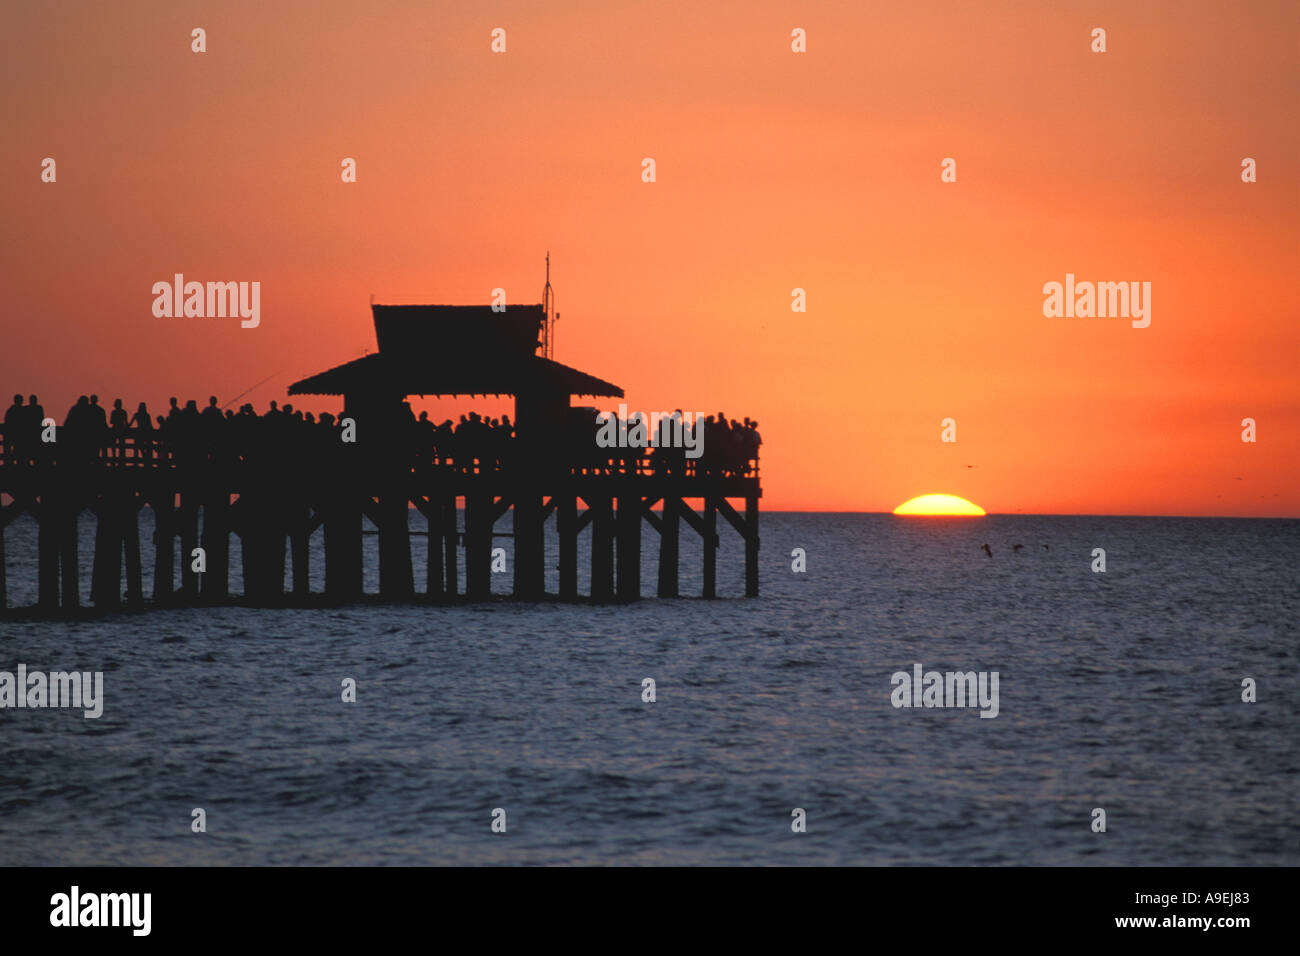 Florida Naples Pier tramonto folla di persone sul molo silhouette orange sky Foto Stock